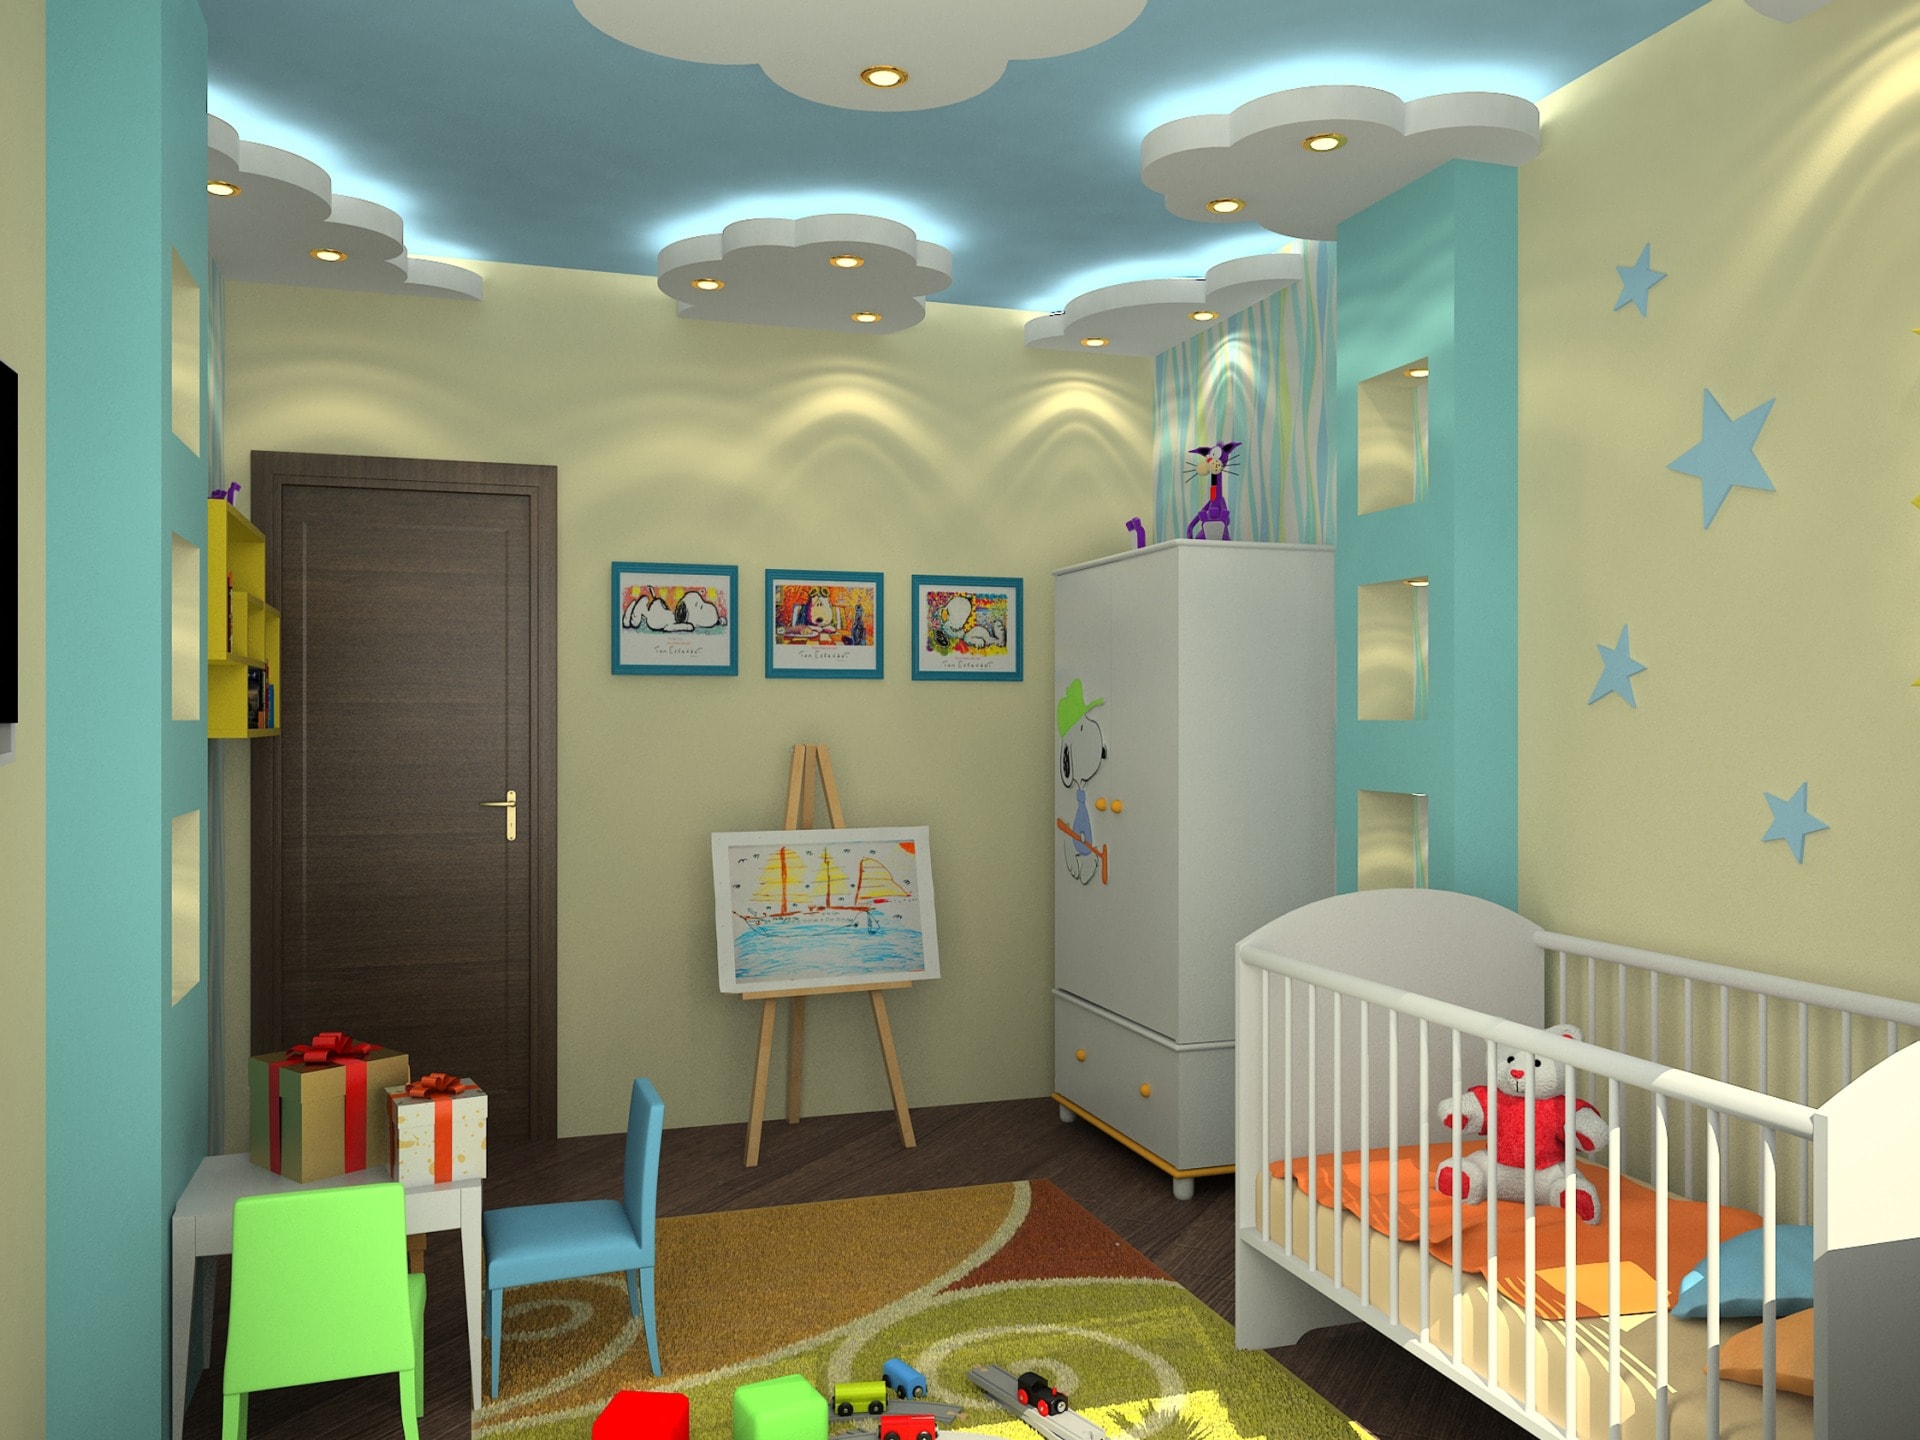 Потолок в детской: общие рекомендации по подбору материала и дизайна.